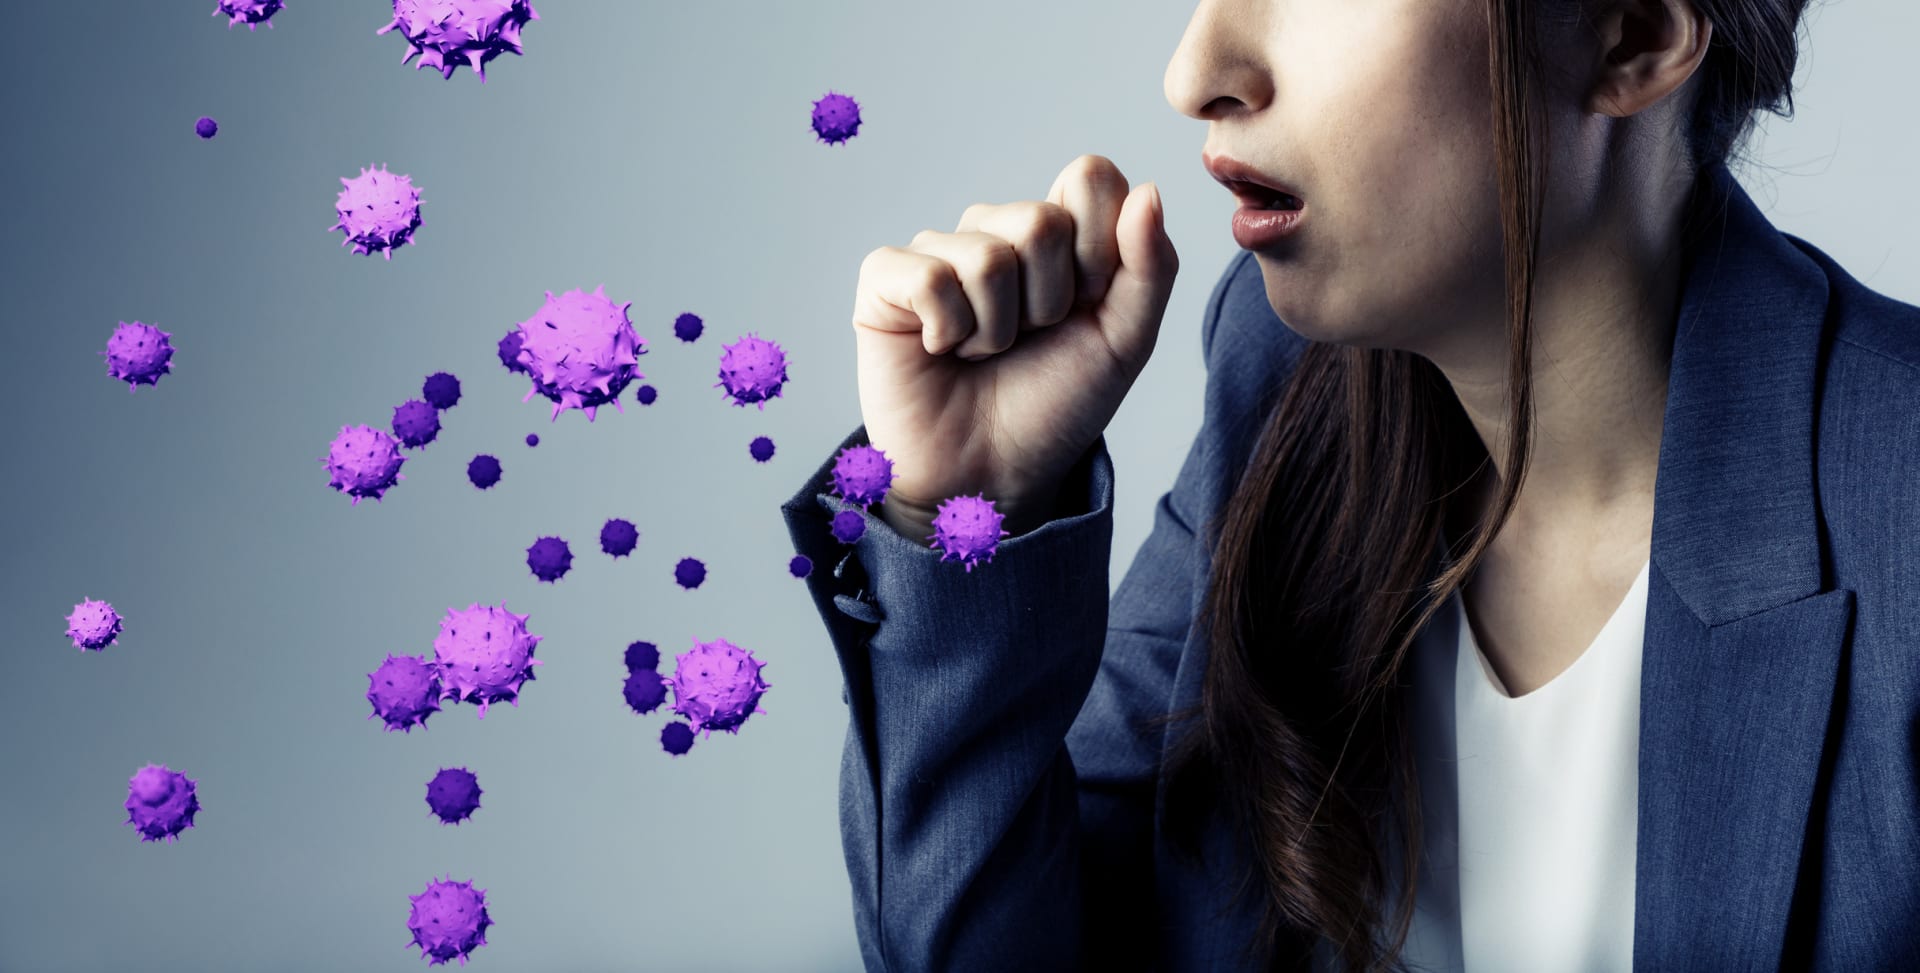 Vyvracíme mýty o zdraví: Nakažení koronavirem zdravý organismus bez problémů zvládne